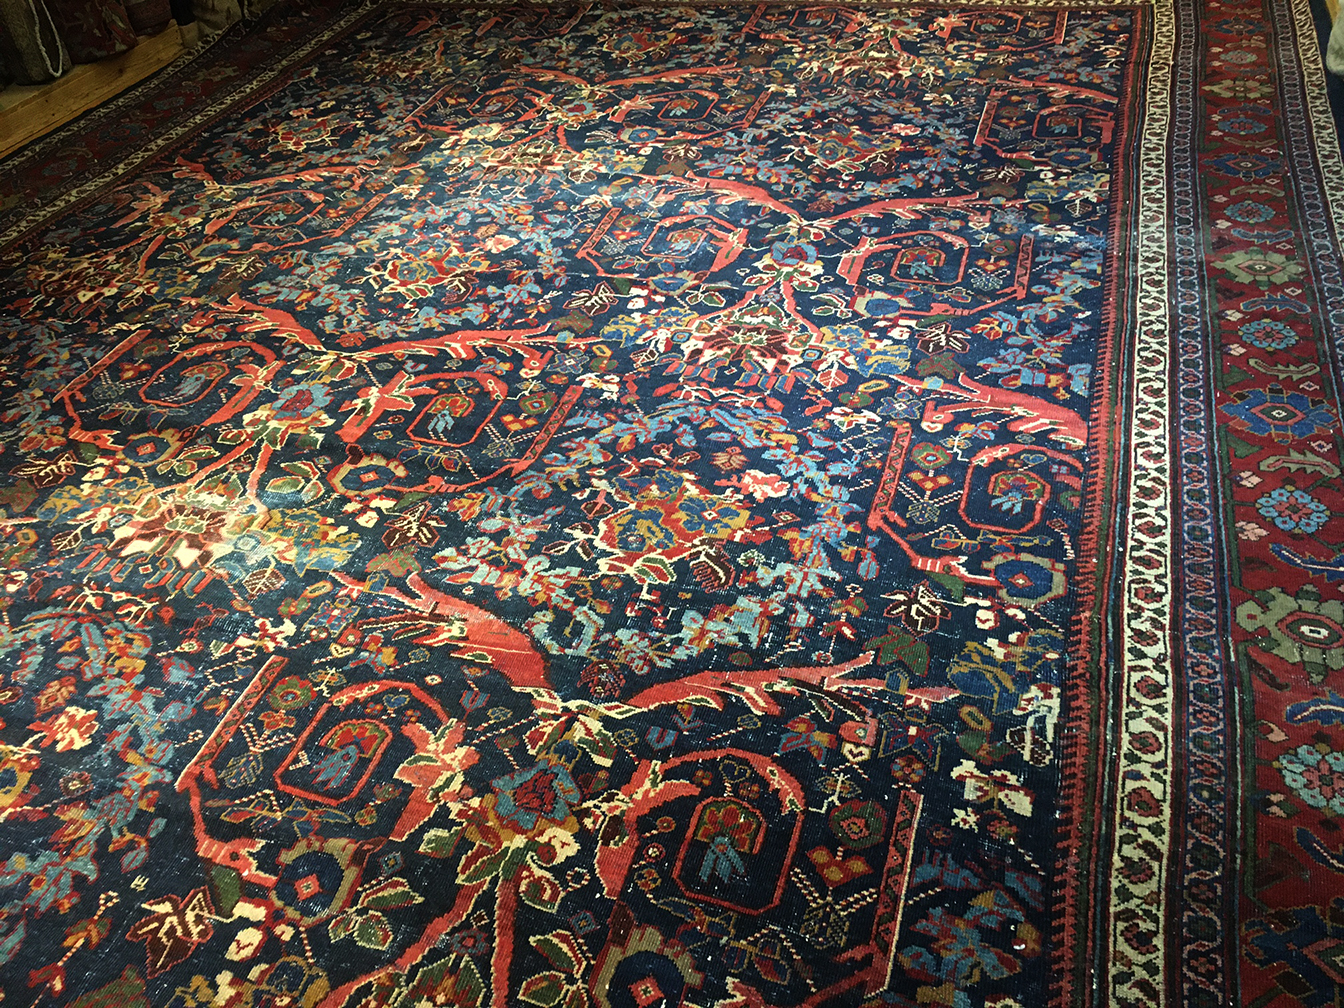 Antique mahal Carpet - # 55869